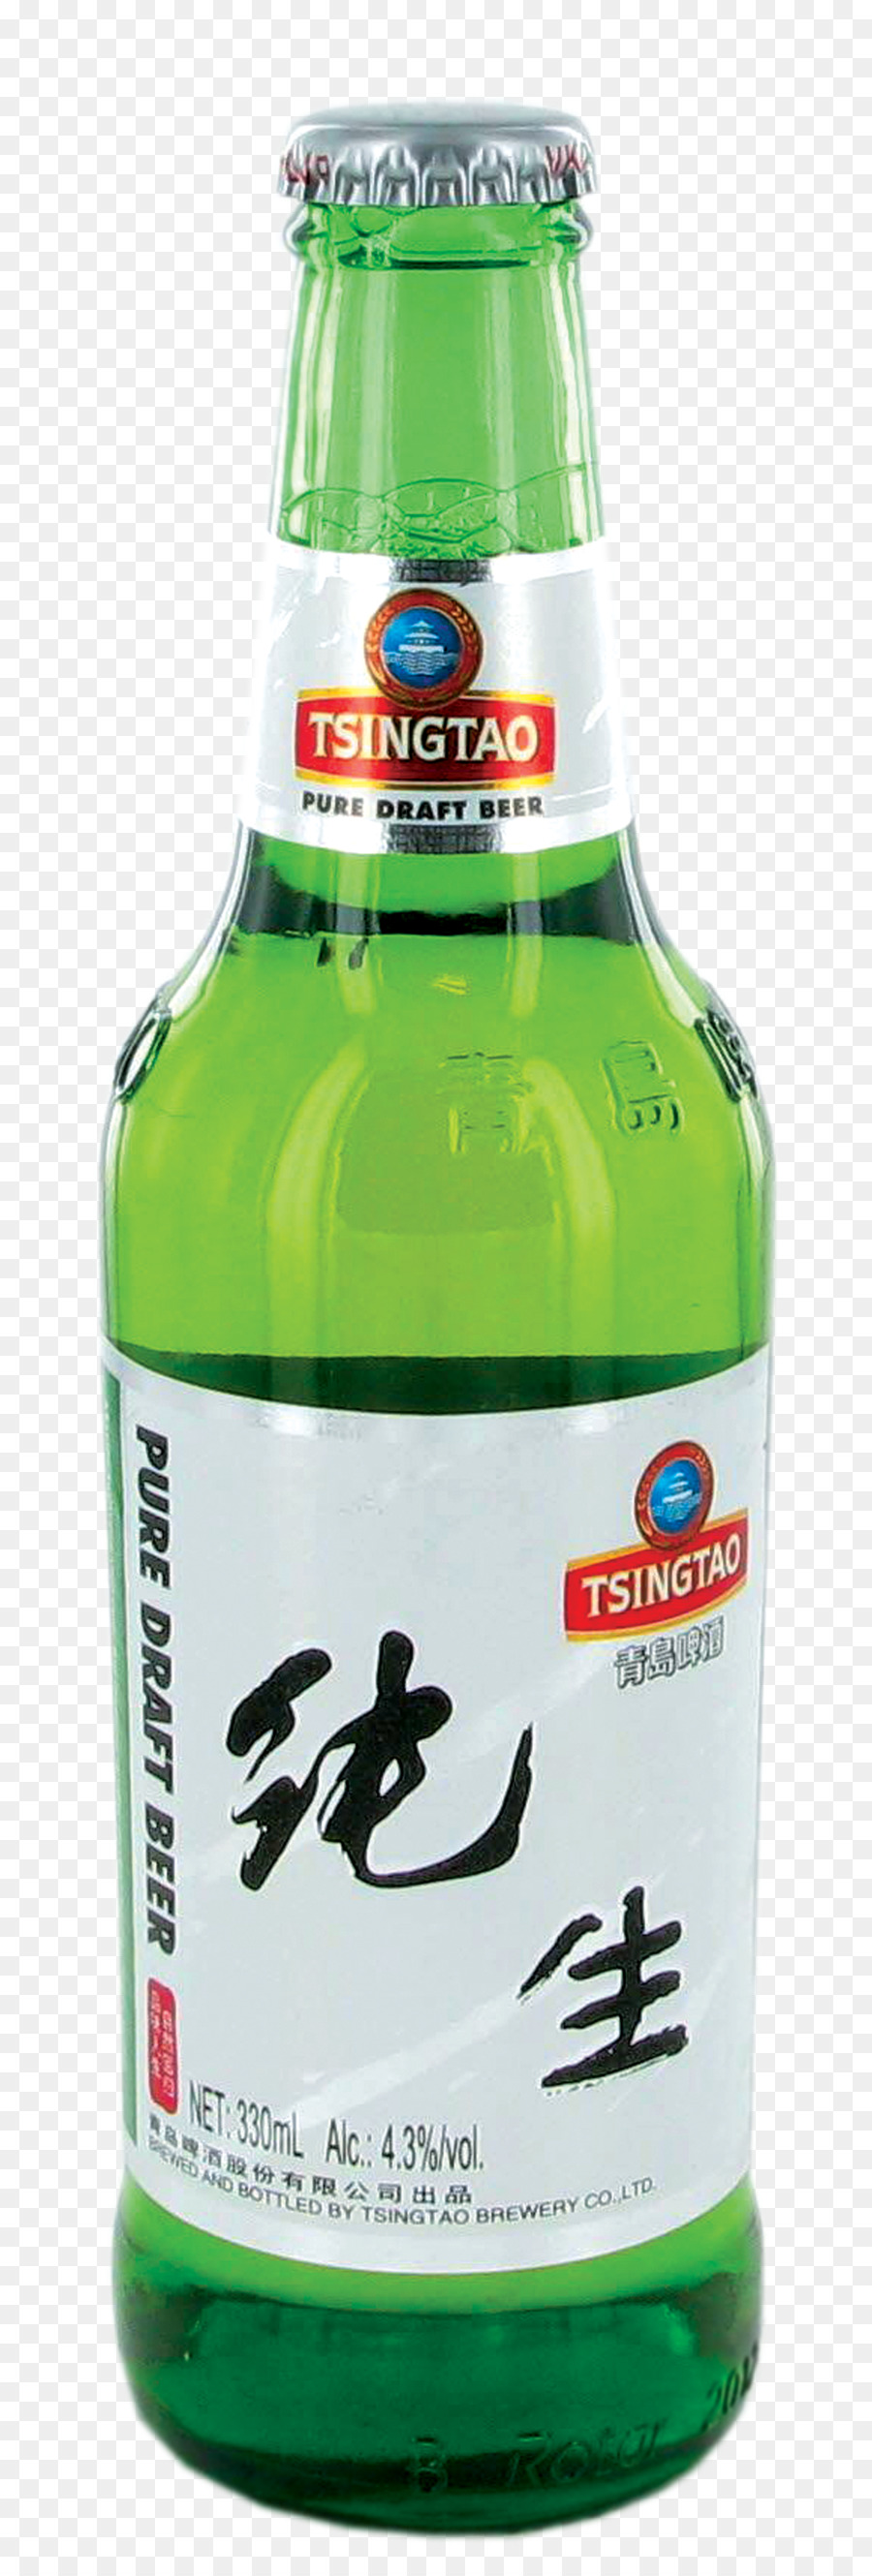 Bottiglia di birra Tsingtao Brewery bottiglia di Vetro - Birra